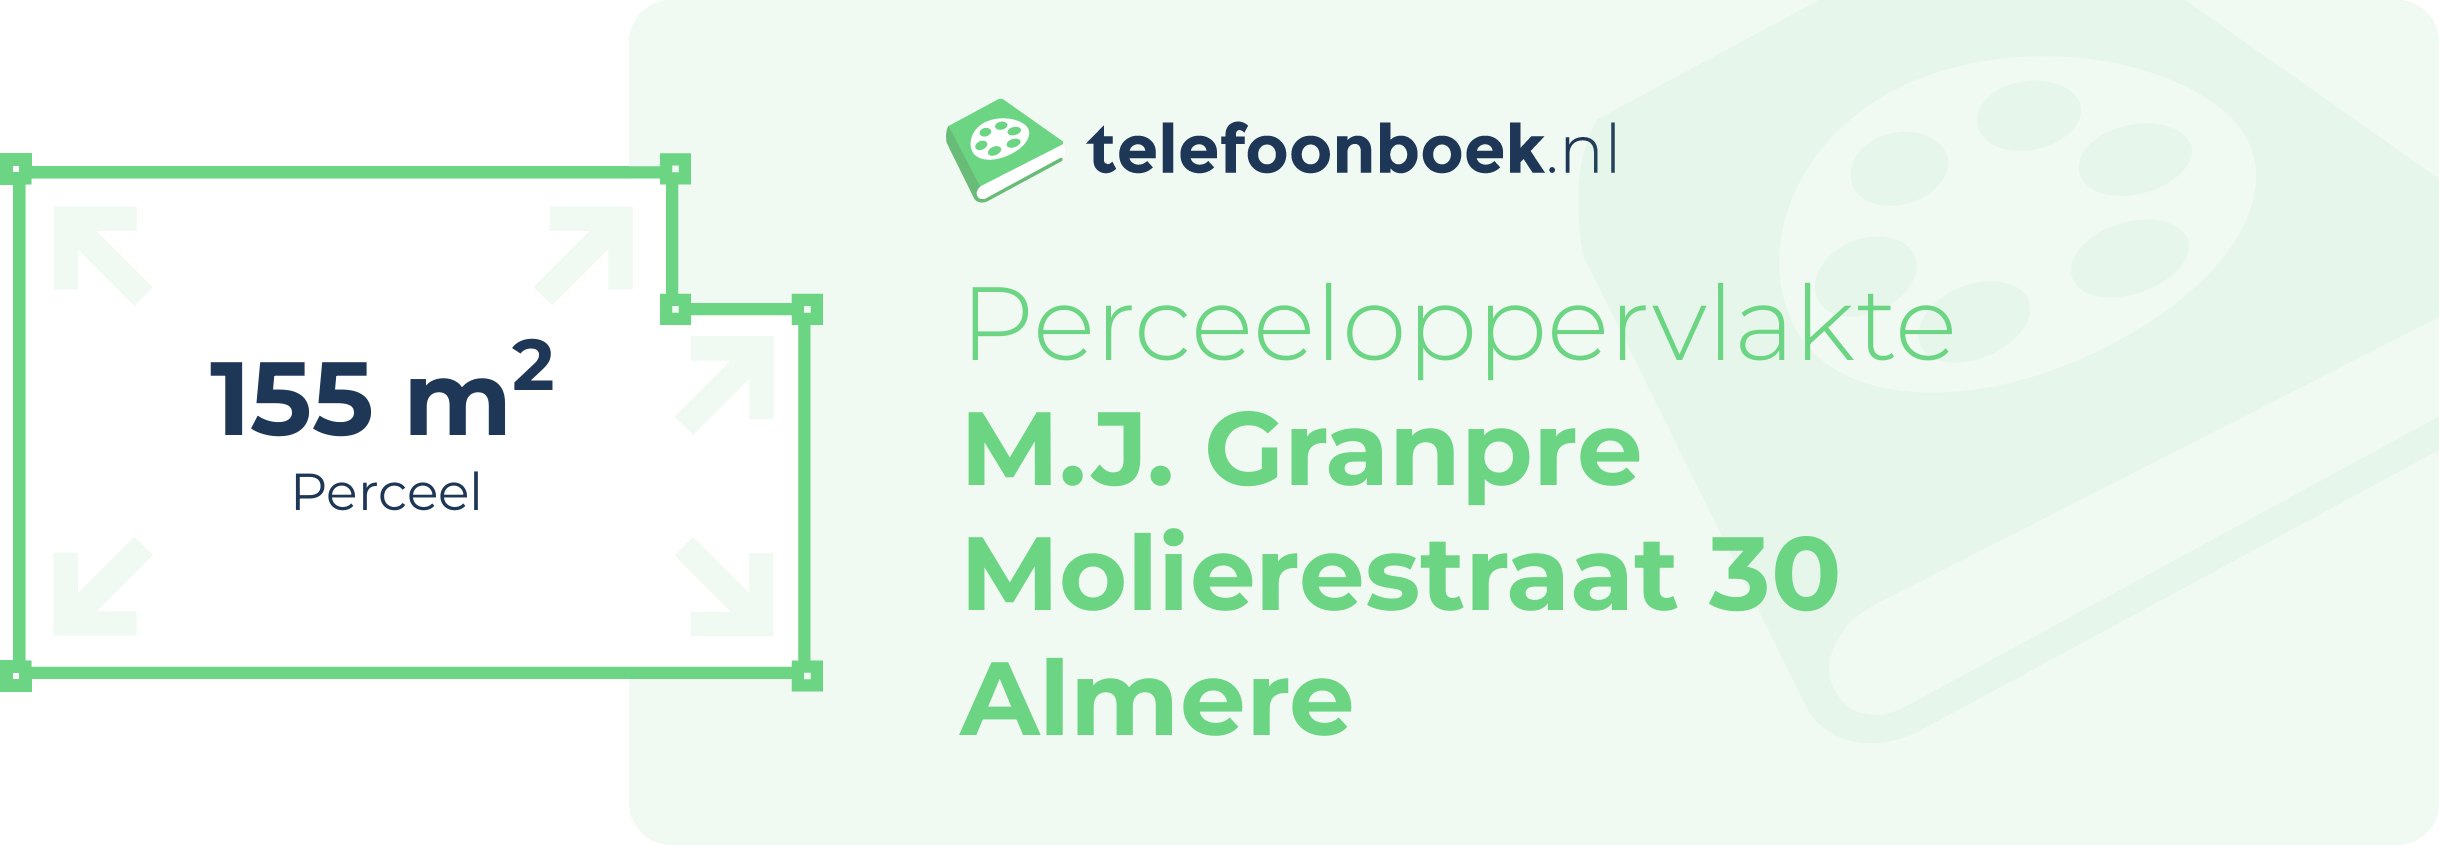 Perceeloppervlakte M.J. Granpre Molierestraat 30 Almere